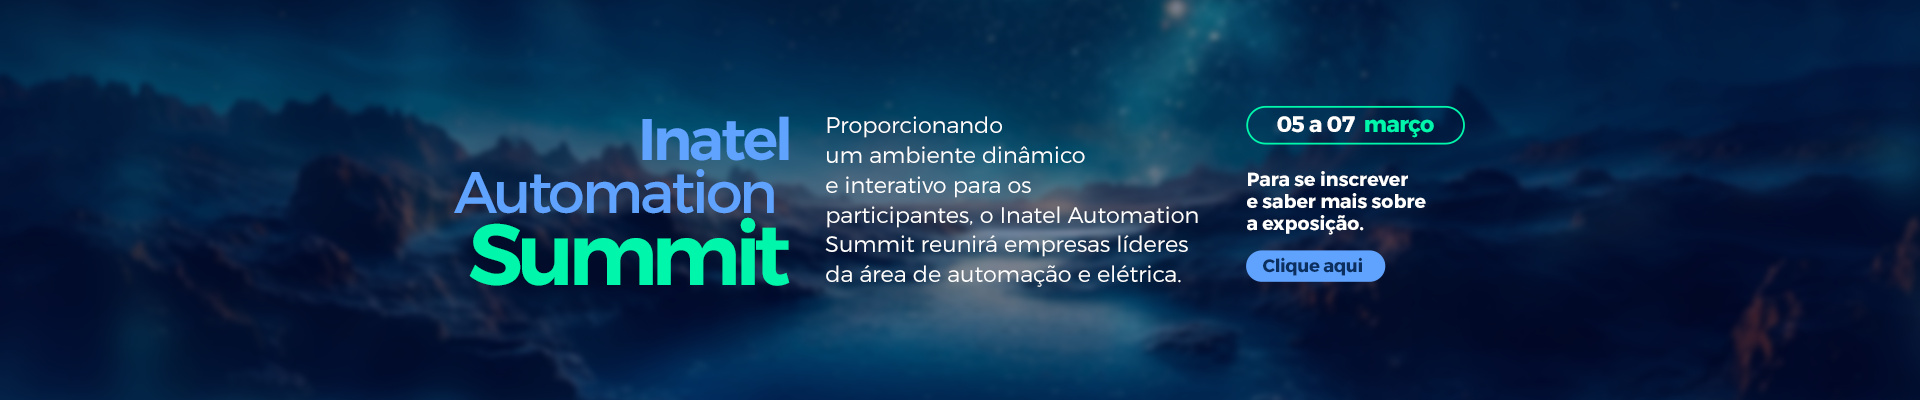 Inatel Automation Summit